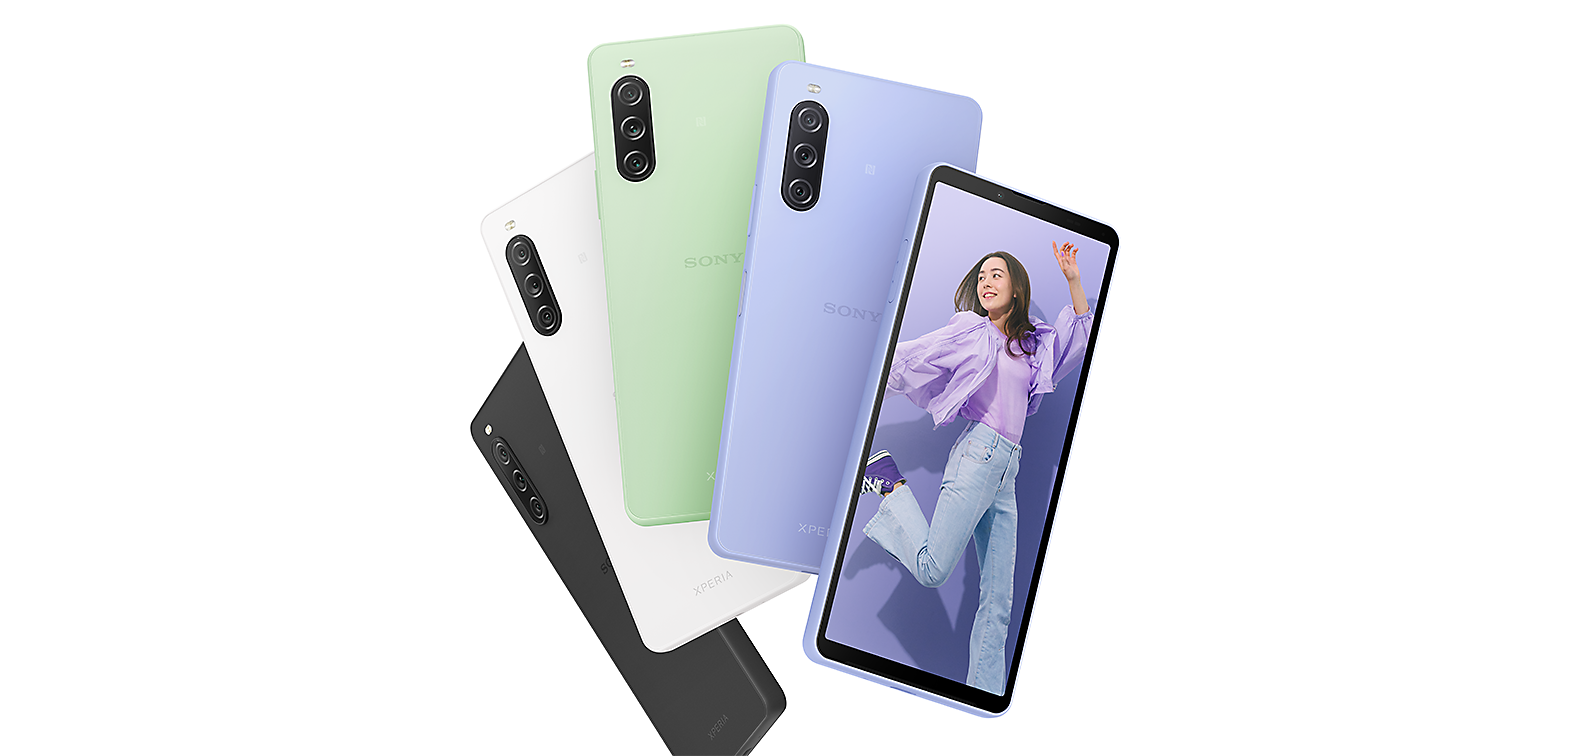 Achteraanzicht van Xperia 10 V-smartphones in de kleuren Zwart, Wit, Saliegroen en Lavendel, plus vooraanzicht van een Xperia 10 V in de kleur Lavendel met een afbeelding van een jonge vrouw op het scherm